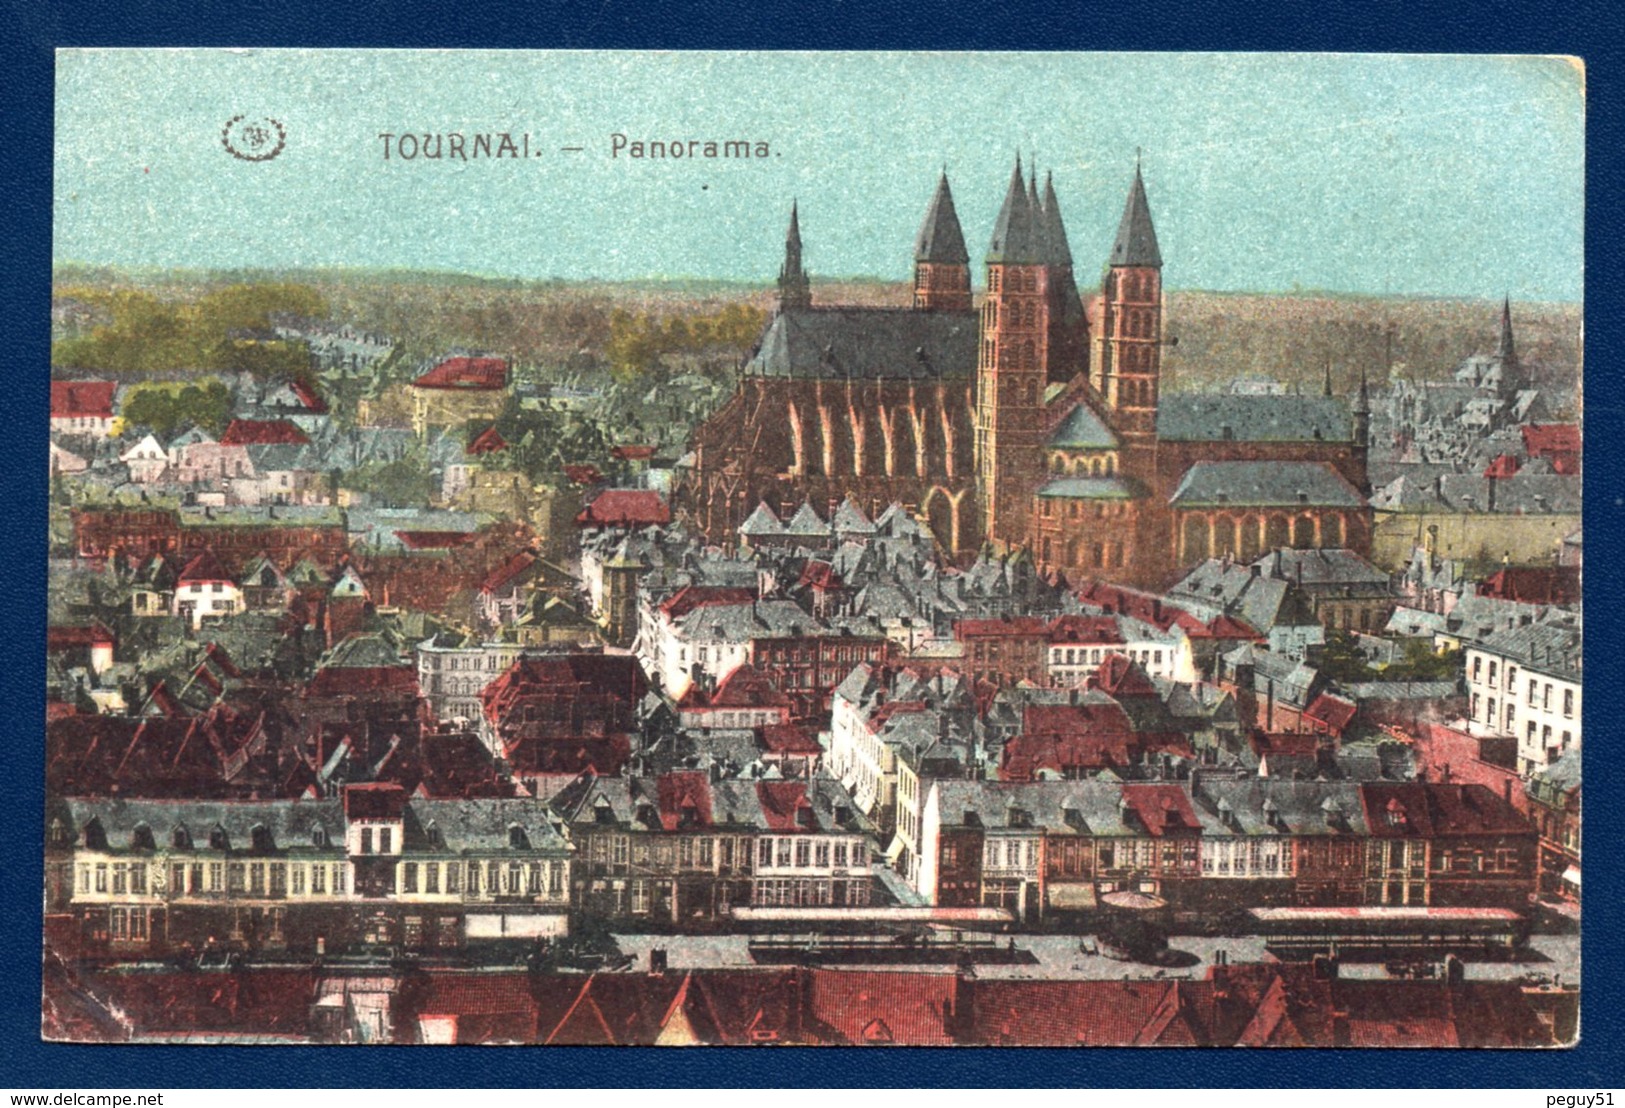 Tournai. Panorama Avec La Cathédrale Notre-Dame. Feldpoststation N°. 401. Infanterie Regiment N.183. Juin 1916 - Tournai